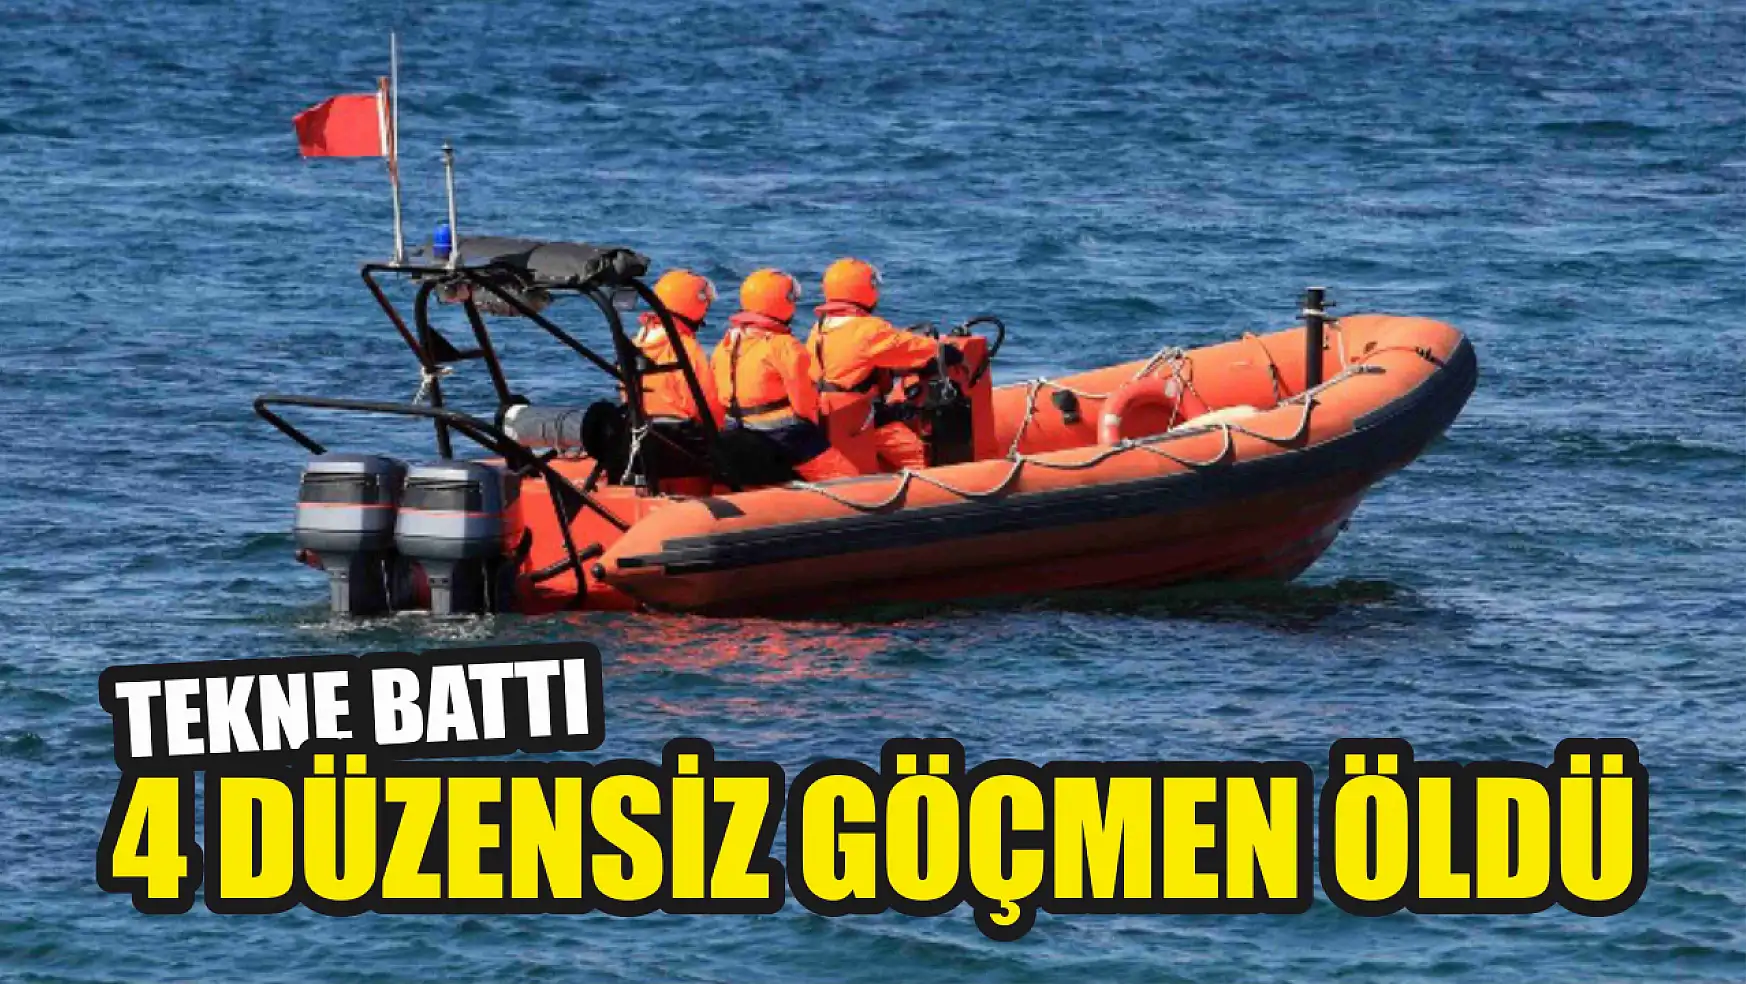 Tekne battı, 4 düzensiz göçmen öldü